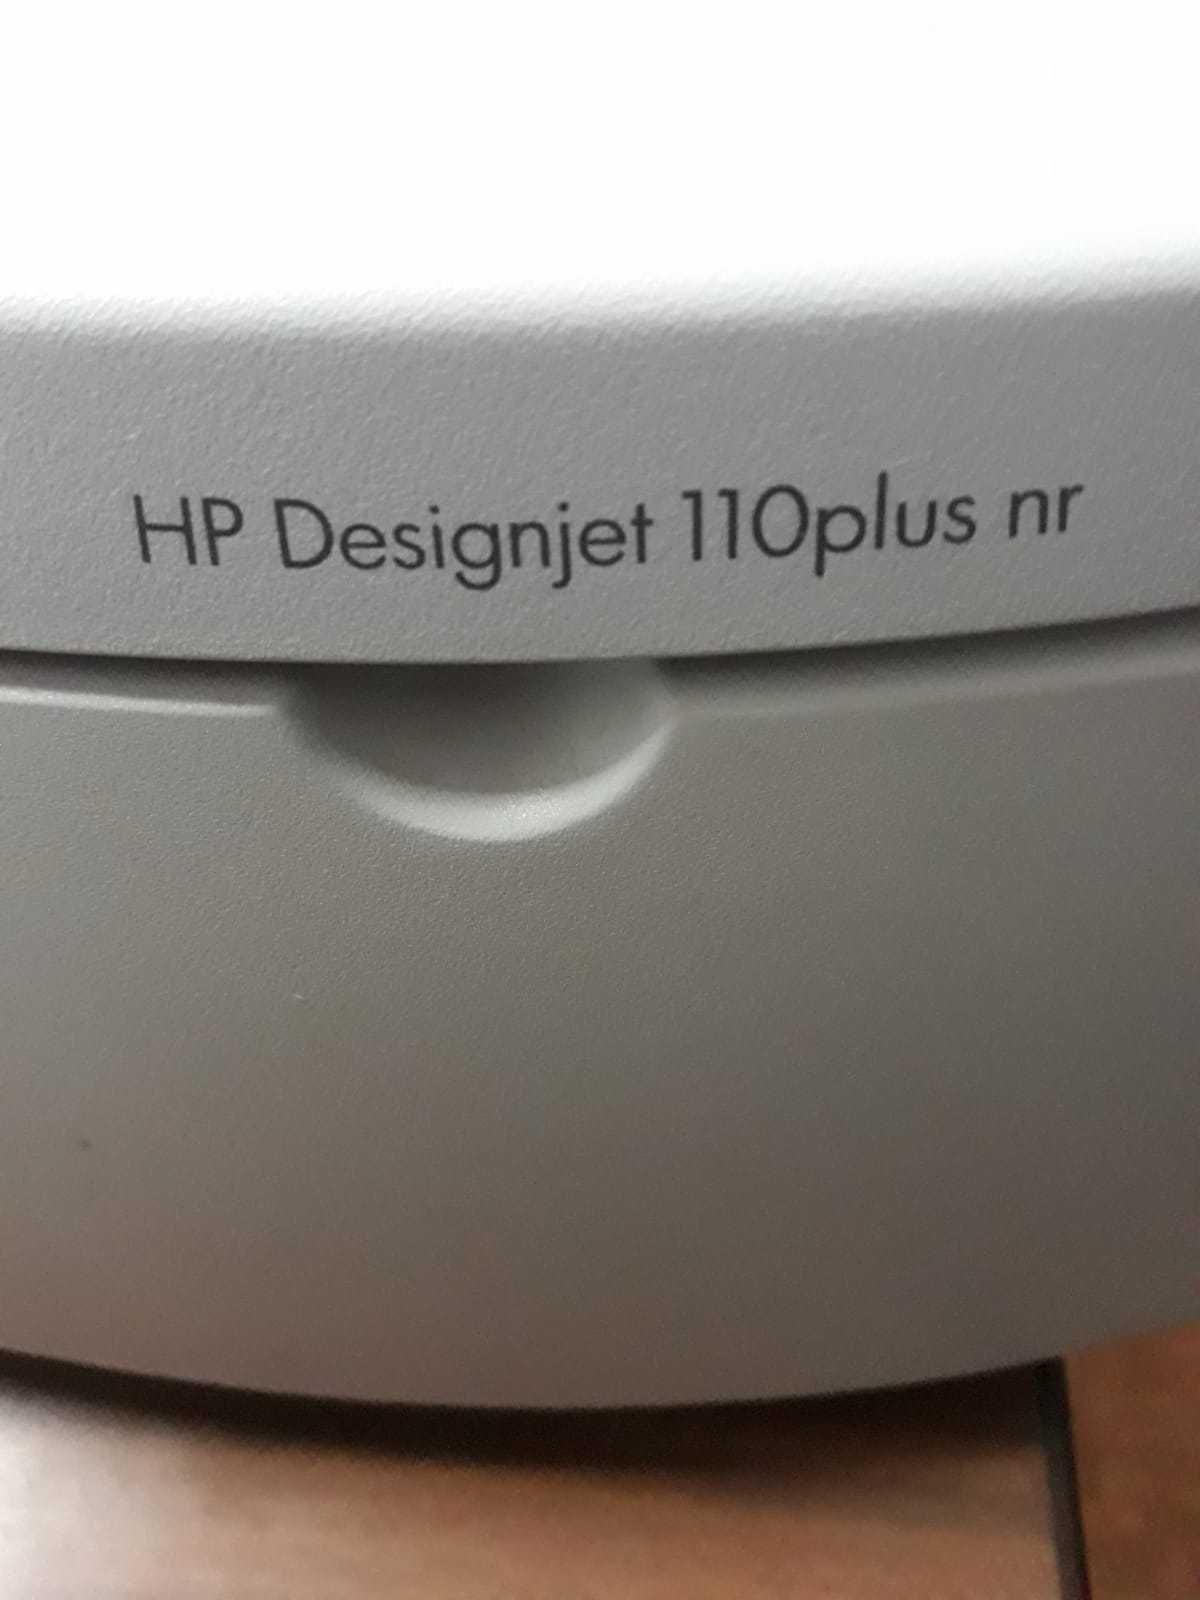 Plotter HP DesignJet 110plus nr de impressão e corte